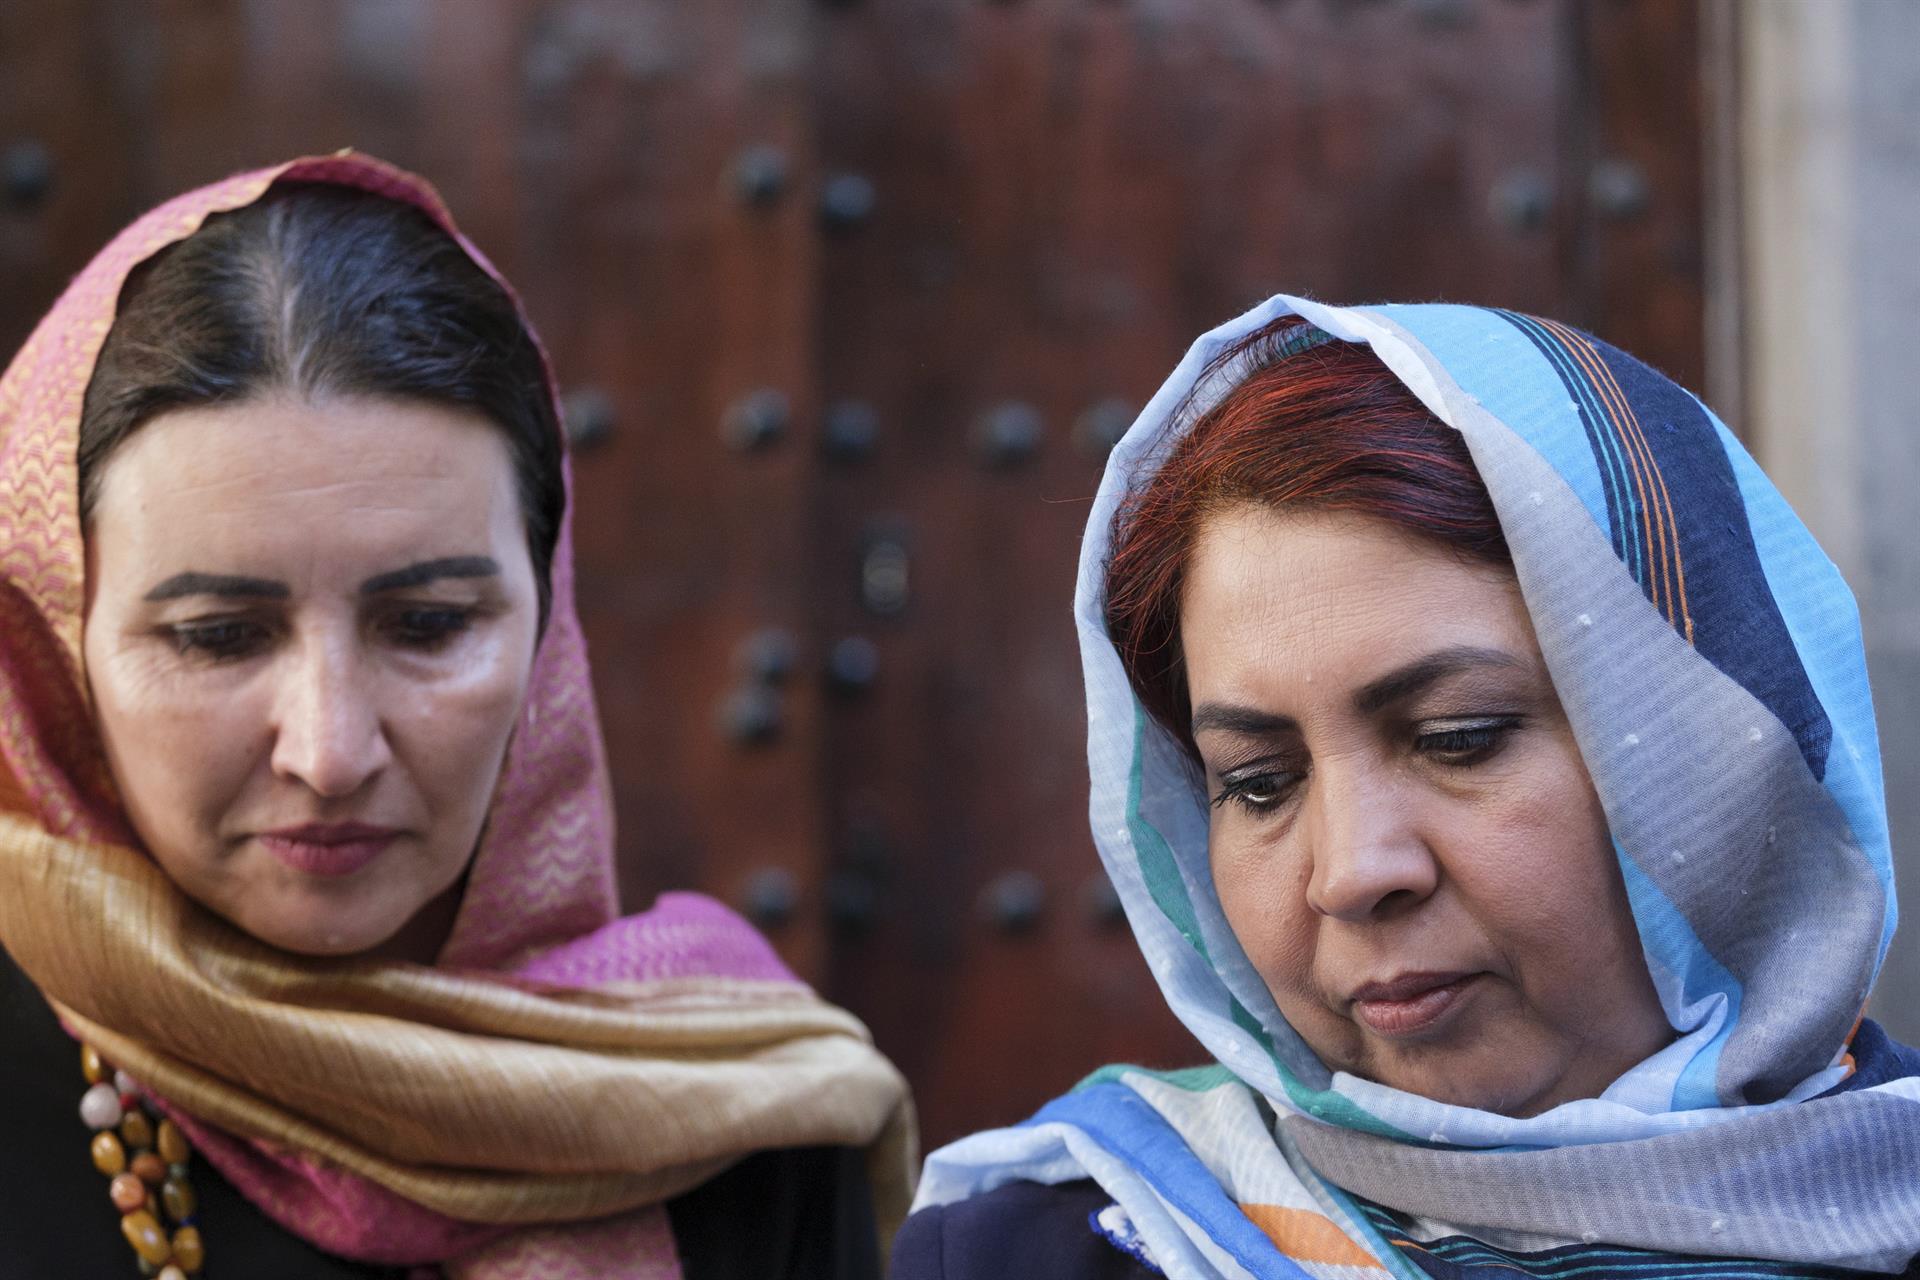 La juezas Gulalai Hotak (i) y Safia Jan Mohammad (d) son dos de las magistradas afganas que este viernes han participado en la jornada "Afganistán, la guerra silenciosa contra mujeres y niñas". EFE/Ángel Medina G.